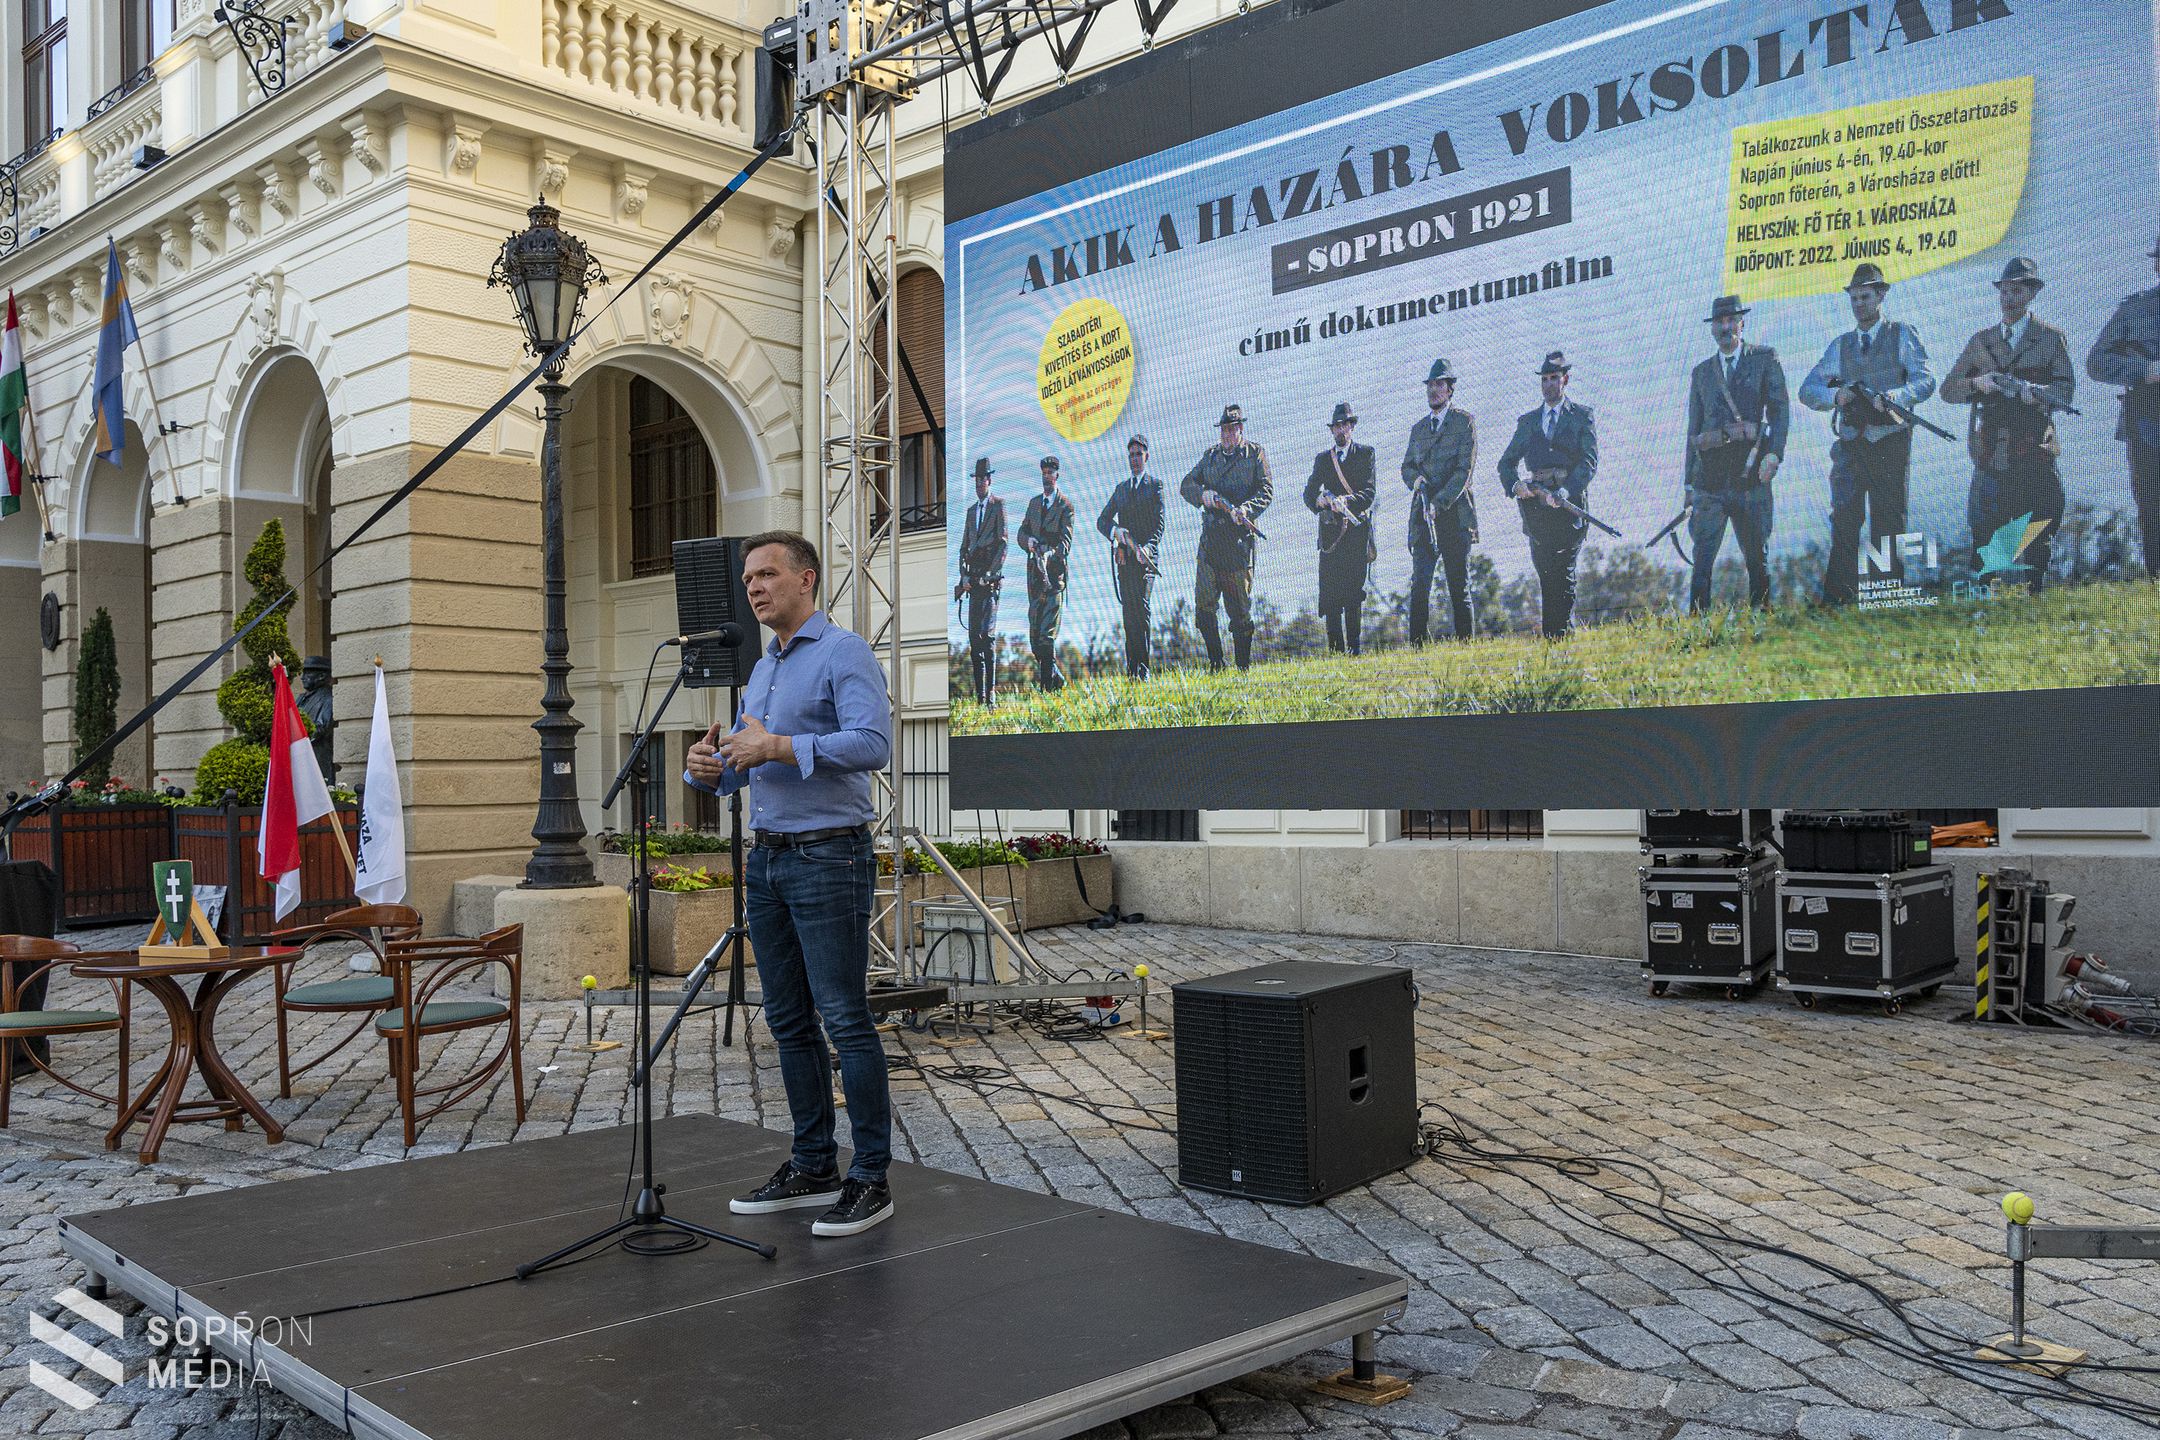 Akik a hazára voksoltak – szabadtéri filmvetítés volt Sopronban